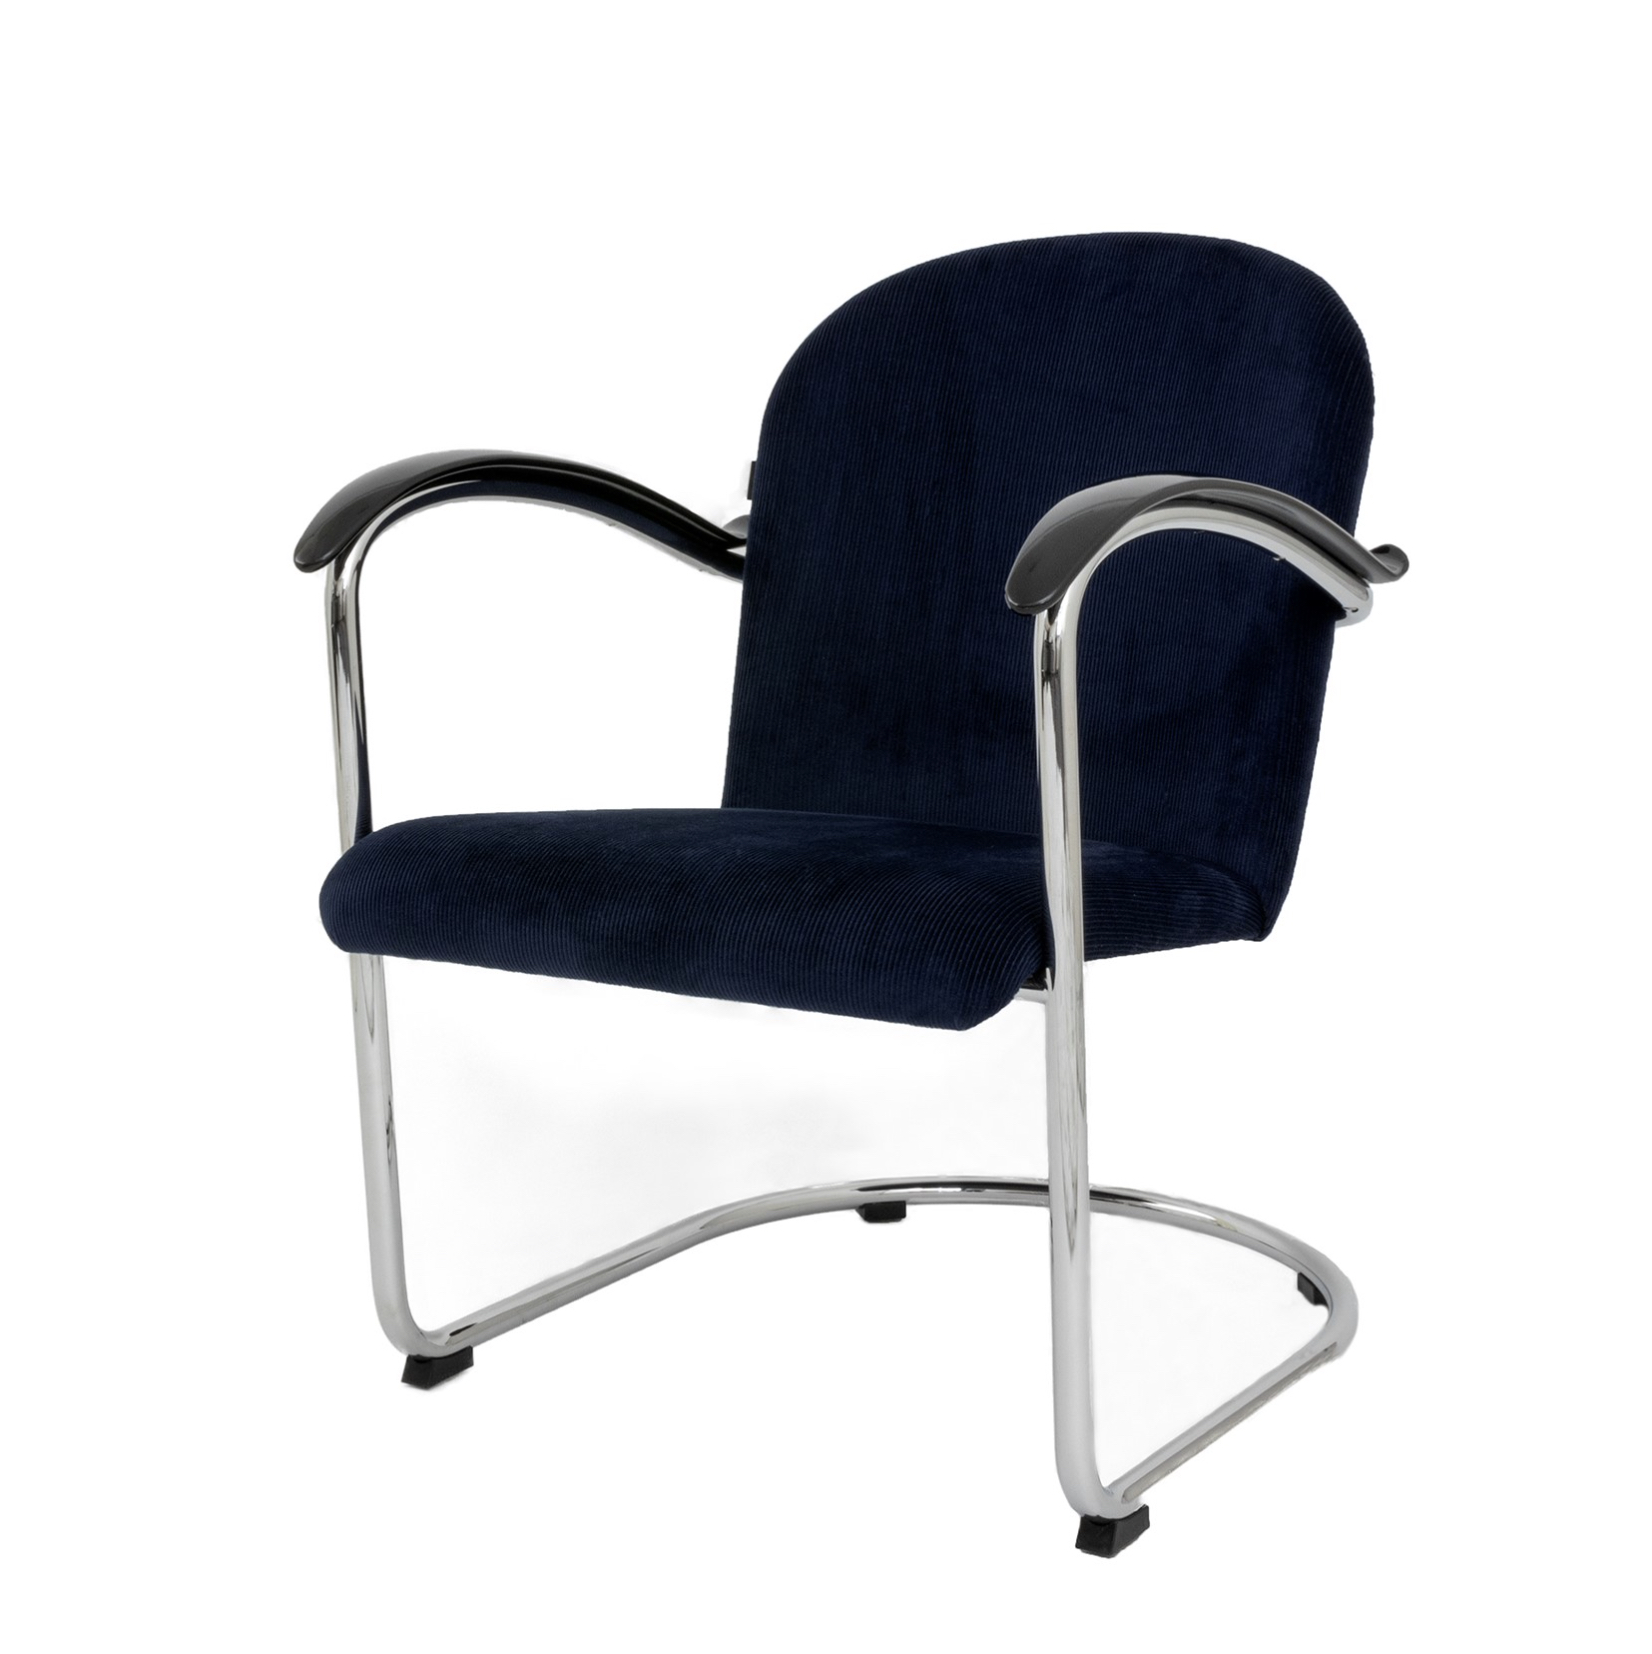 Dutch Originals Easy chair GISPEN 414